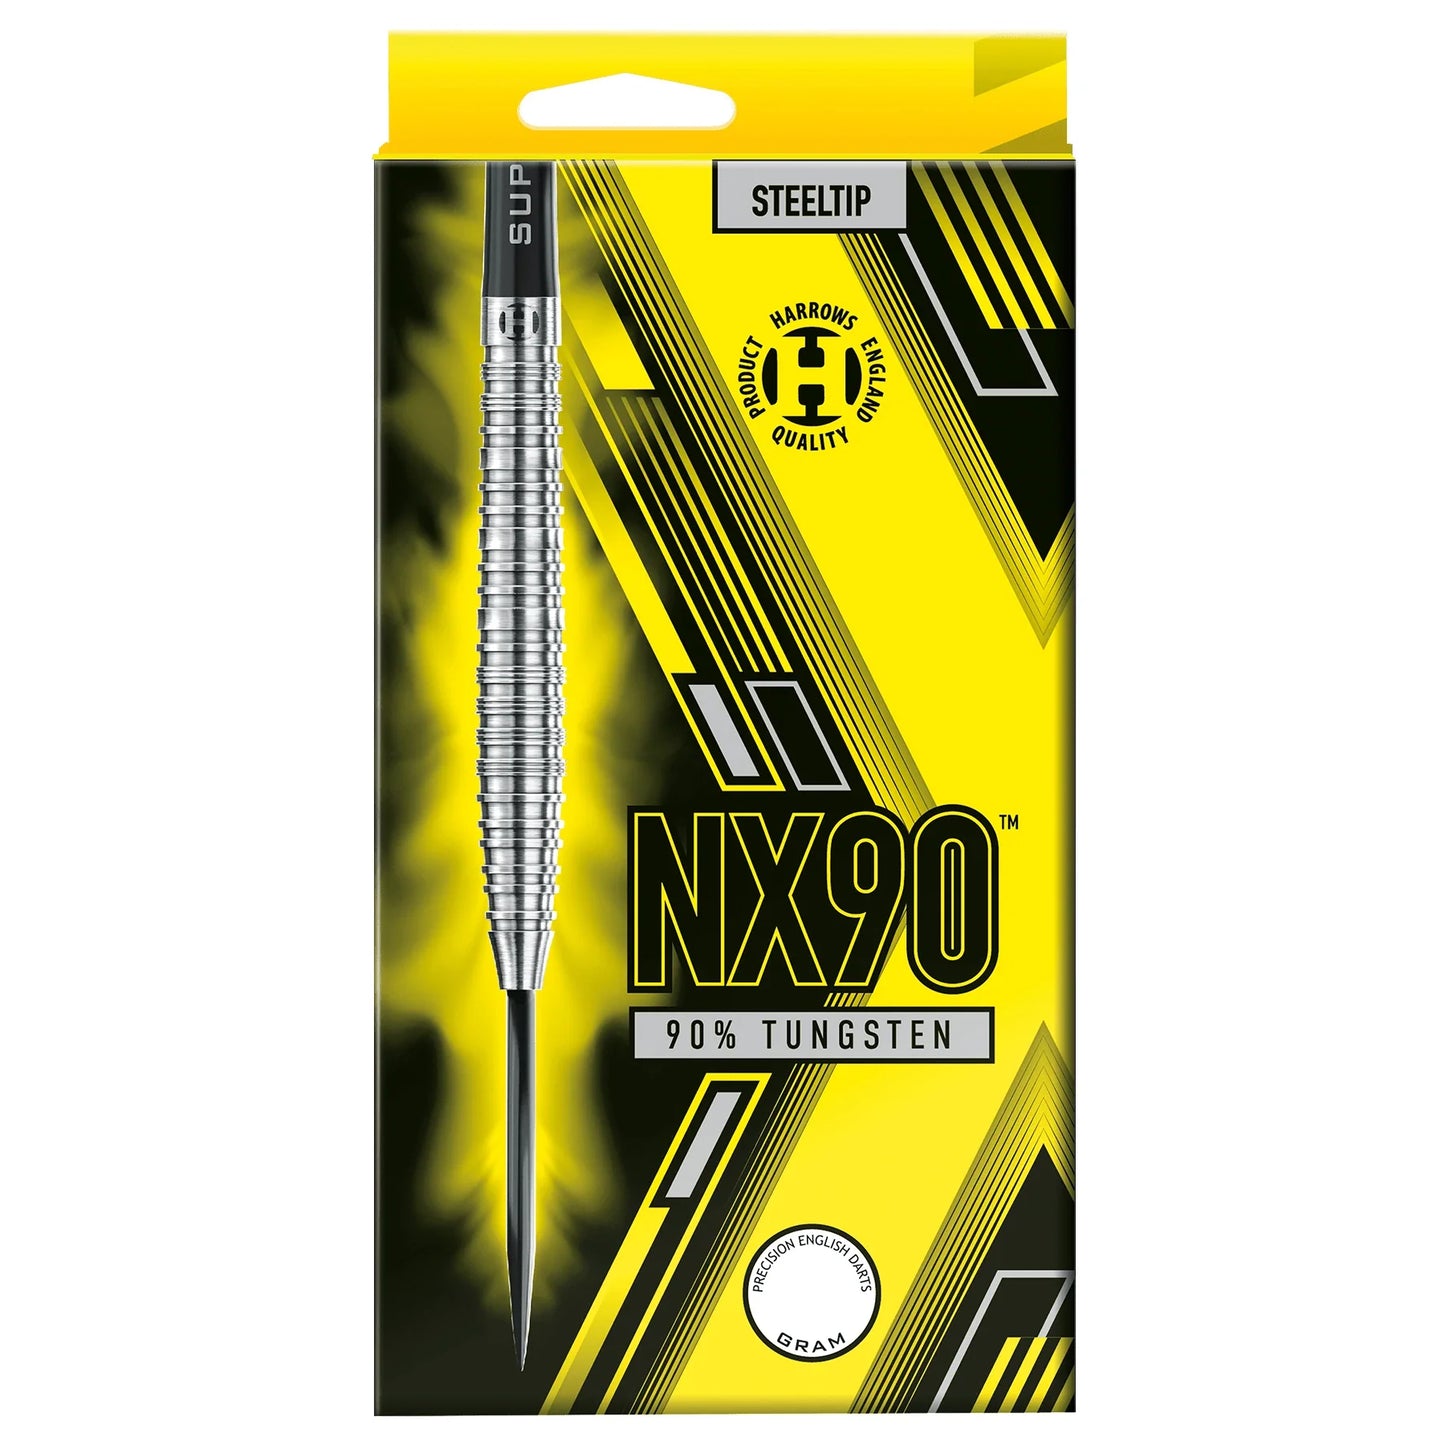 Harrows NX90 24g Darts